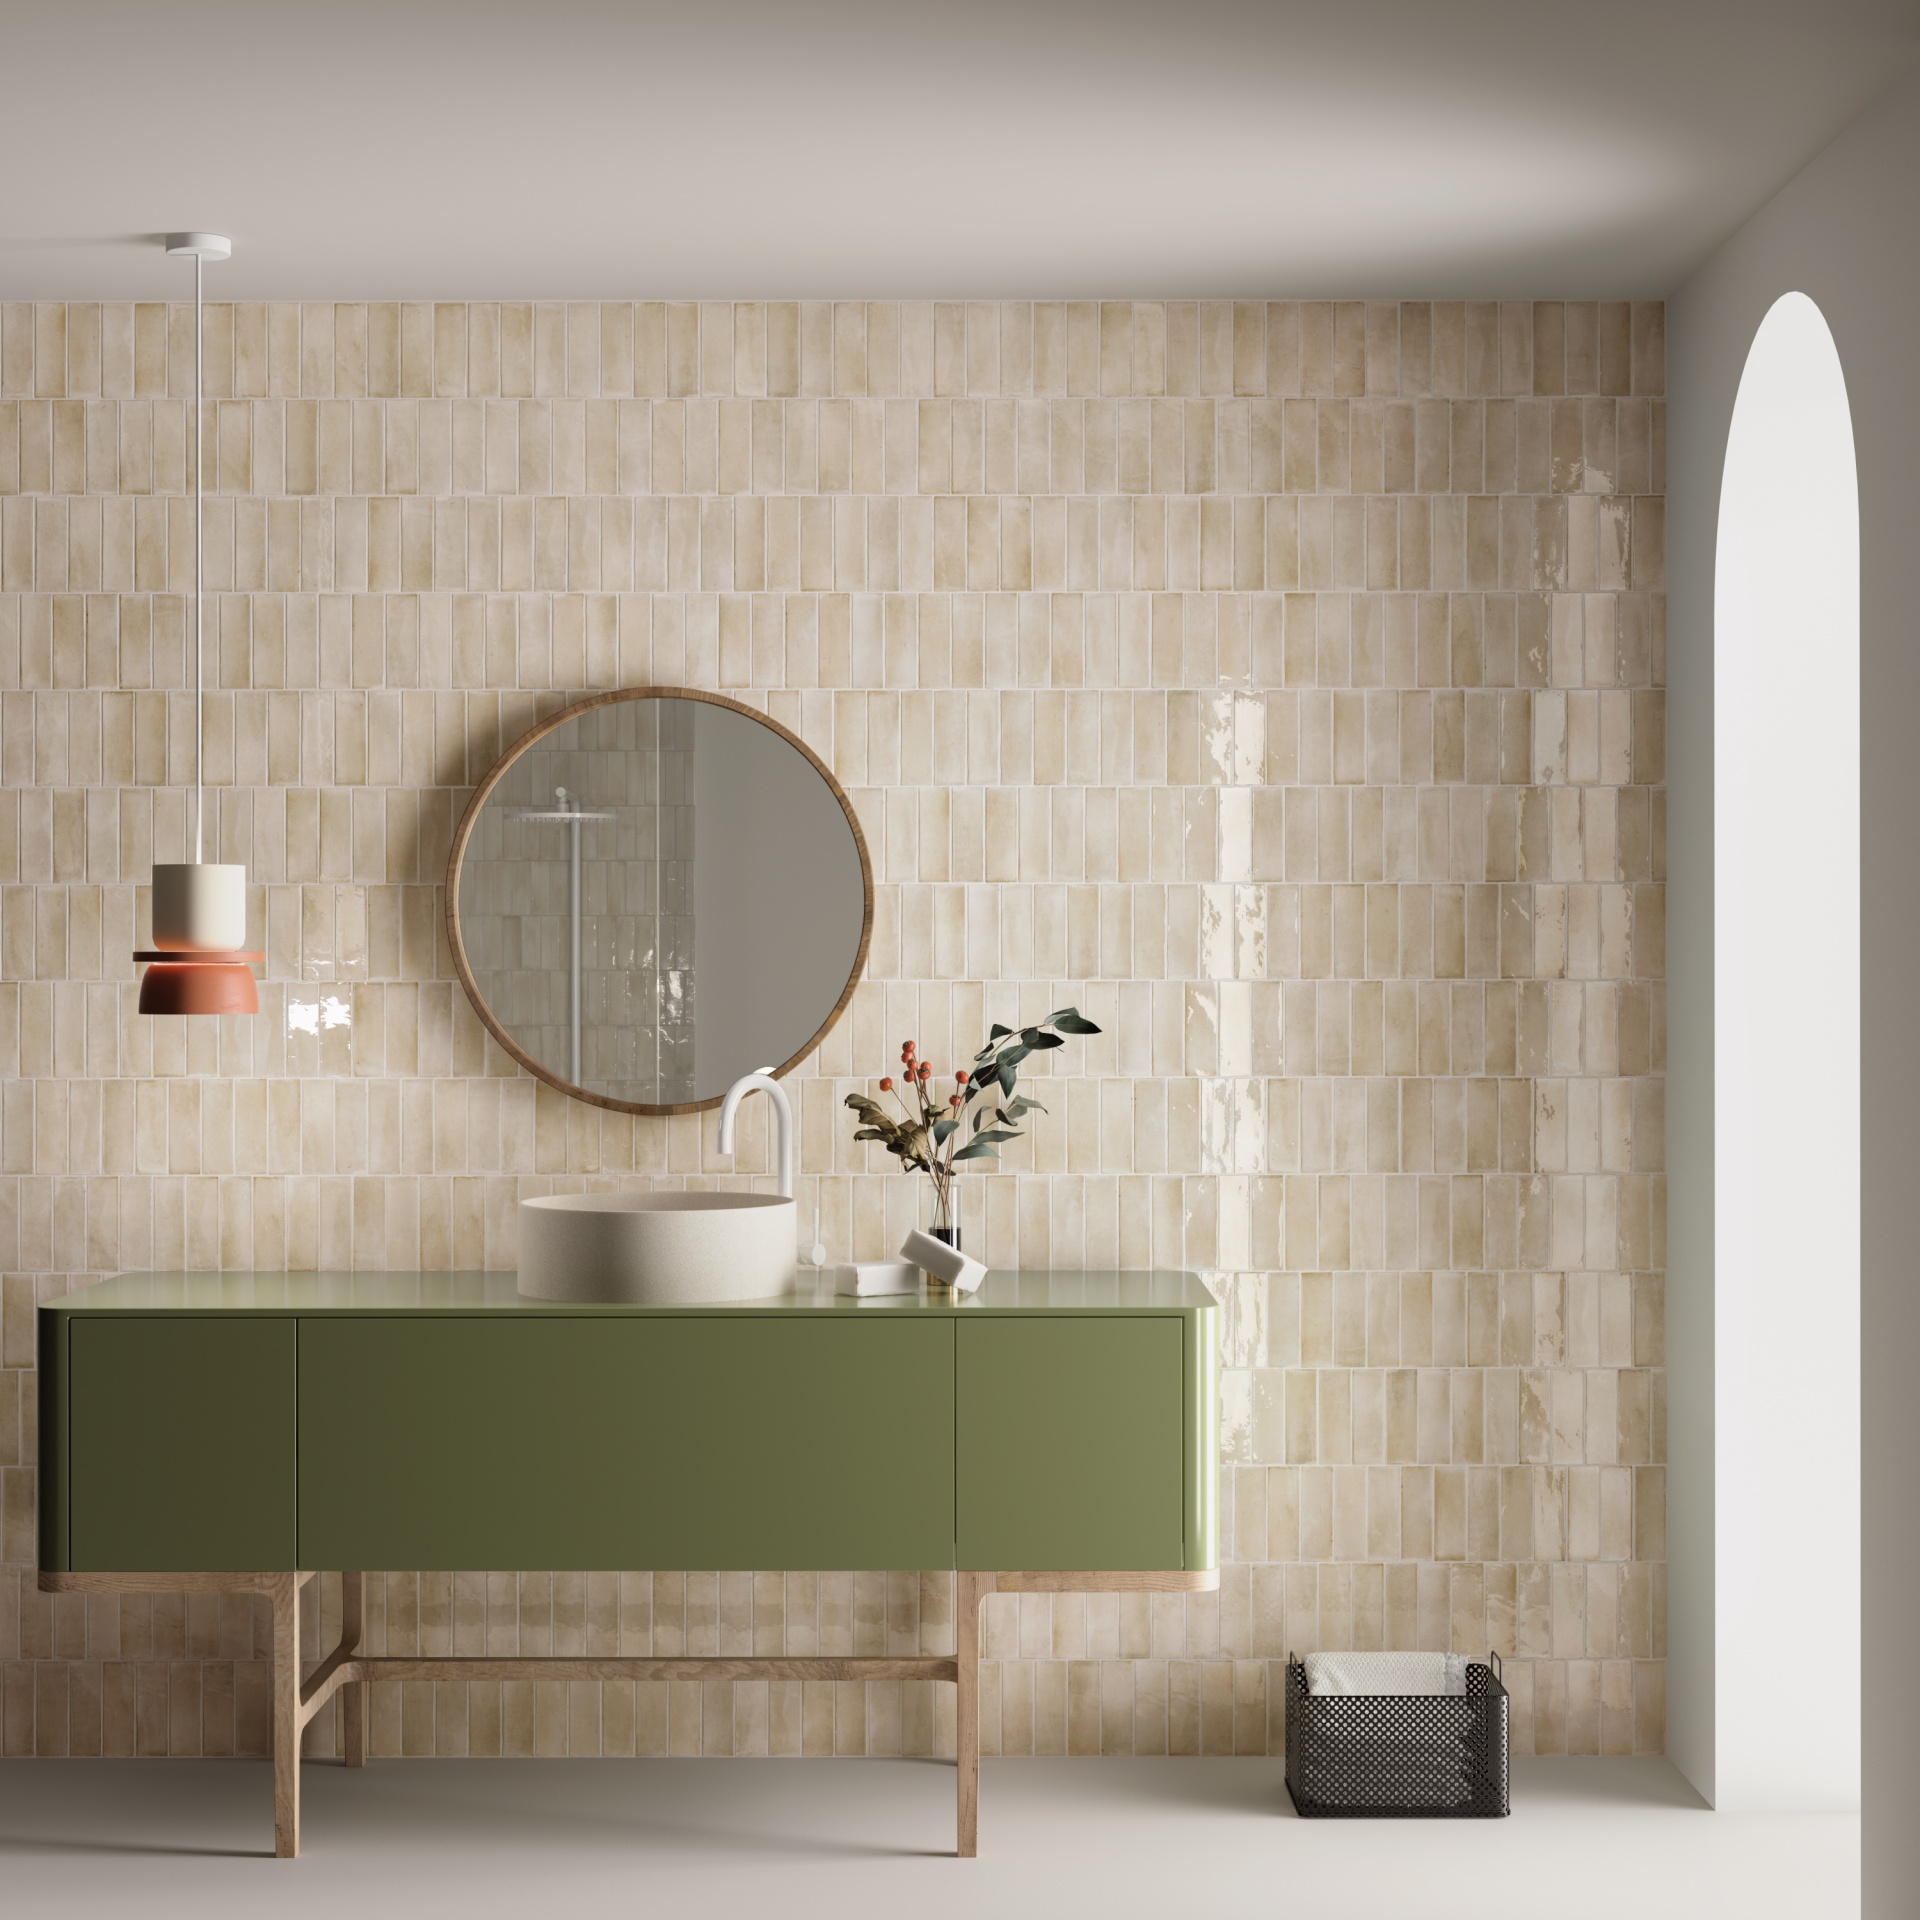 Carrelage Zellige beige tonalités claires 5X15 dans une salle de bain épurée murs blancs meuble vert olive vasque blanche miroir rond